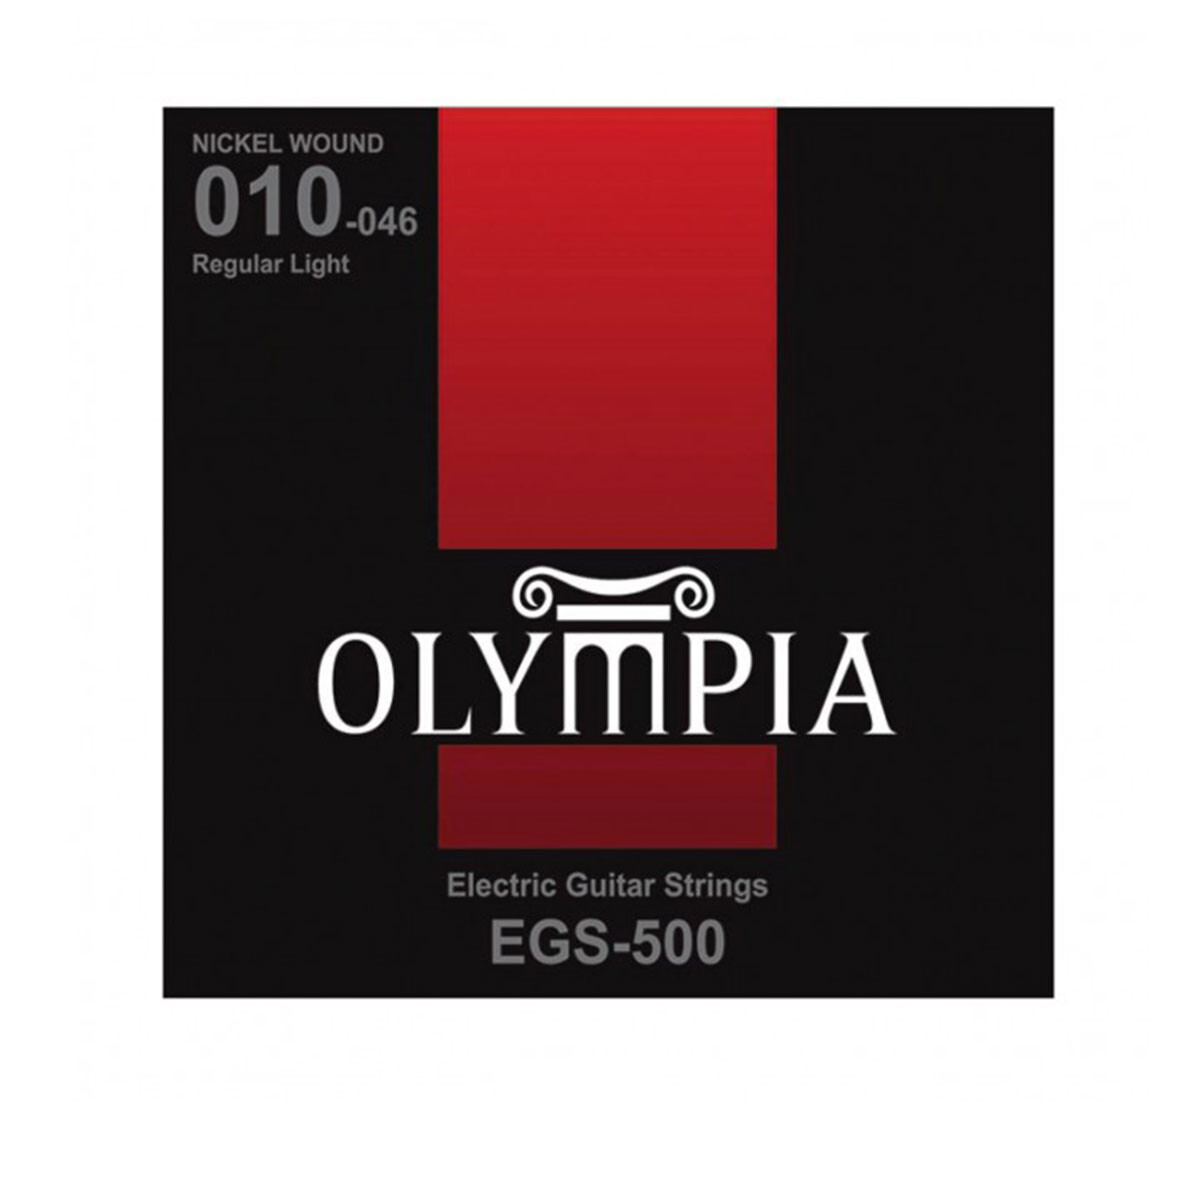 Encordado Electrica Olympia Egs500 010-046 